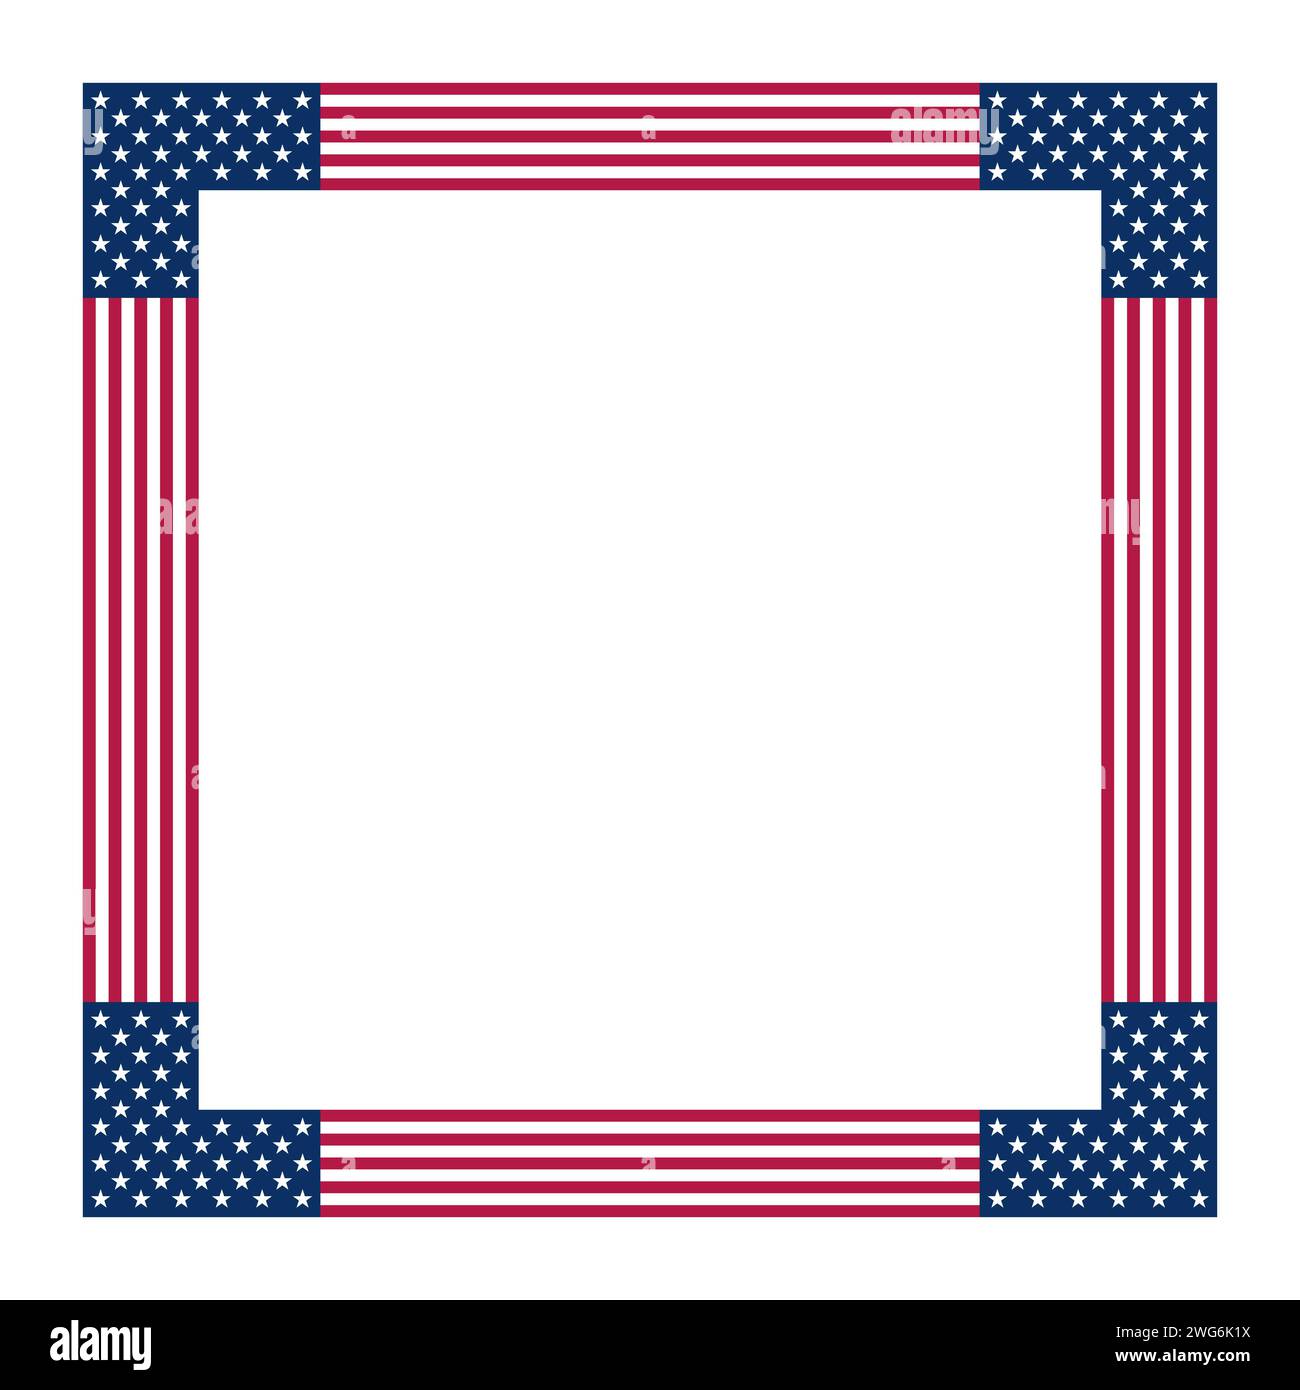 Motivo bandiera americana, cornice quadrata. Confine fatto con stelle e strisce, basato sulla bandiera nazionale degli Stati Uniti. Foto Stock